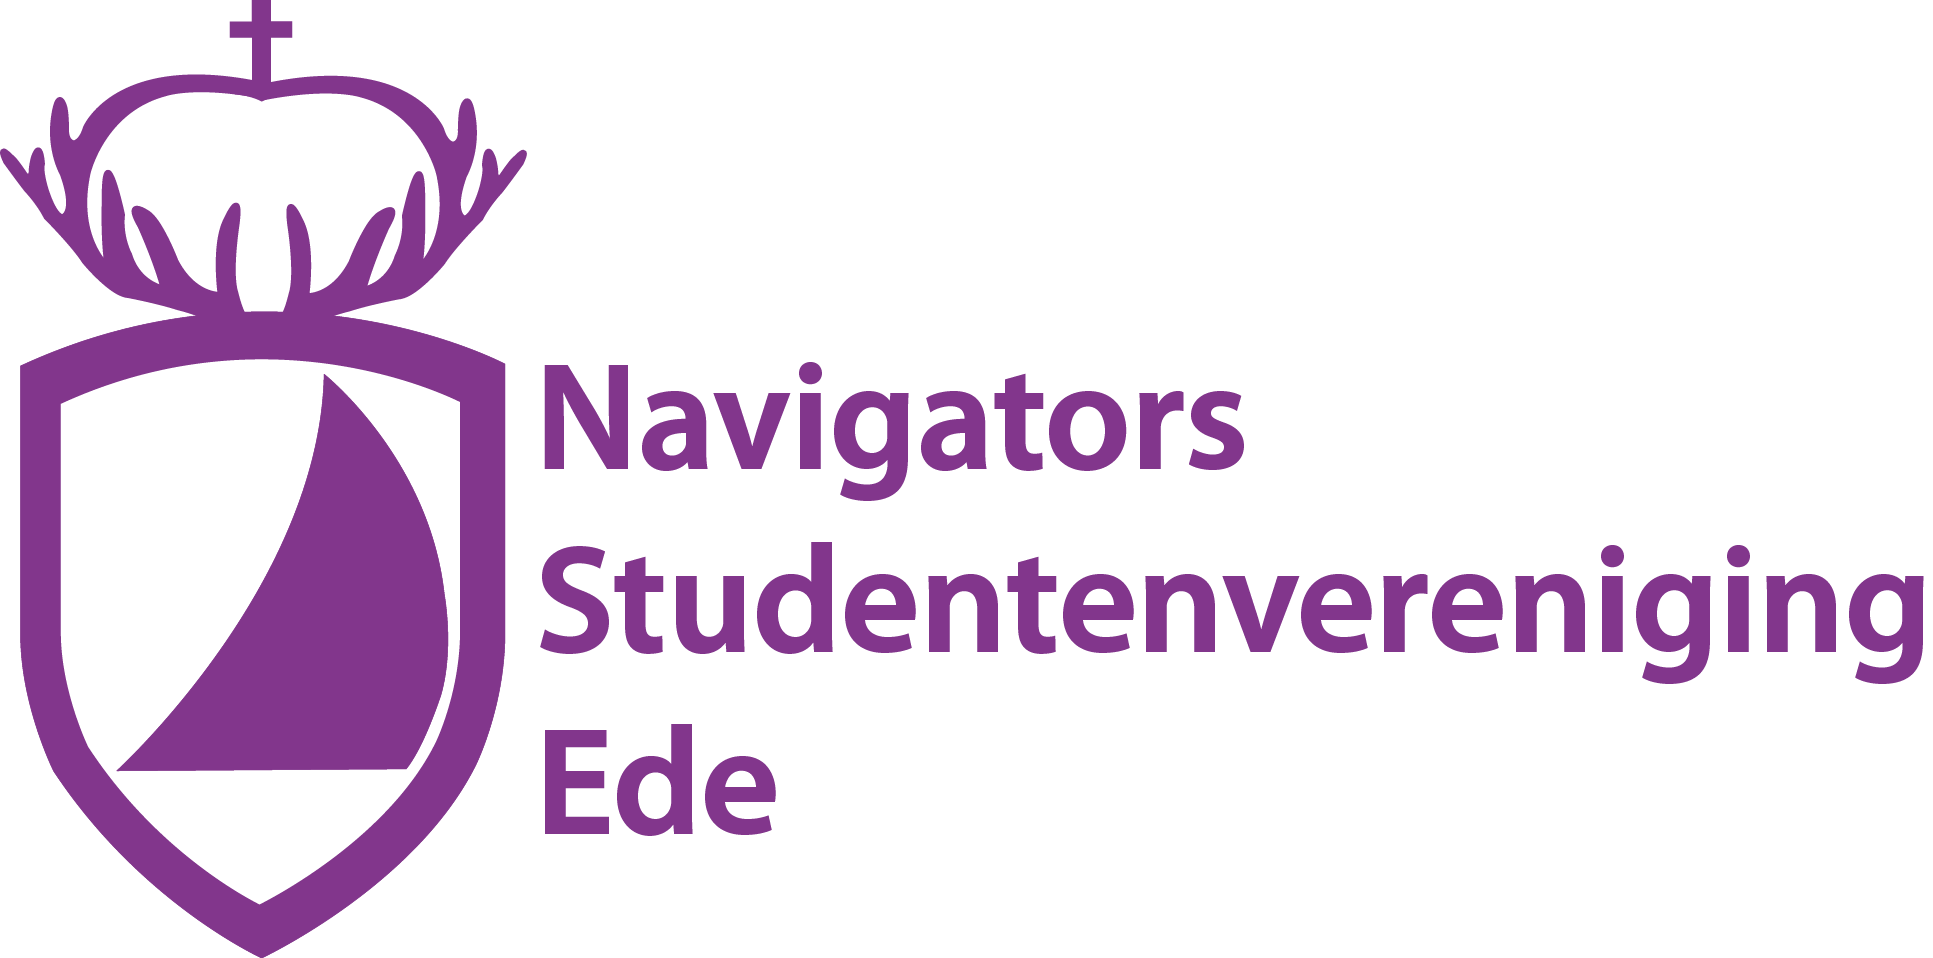 Navigators Ede